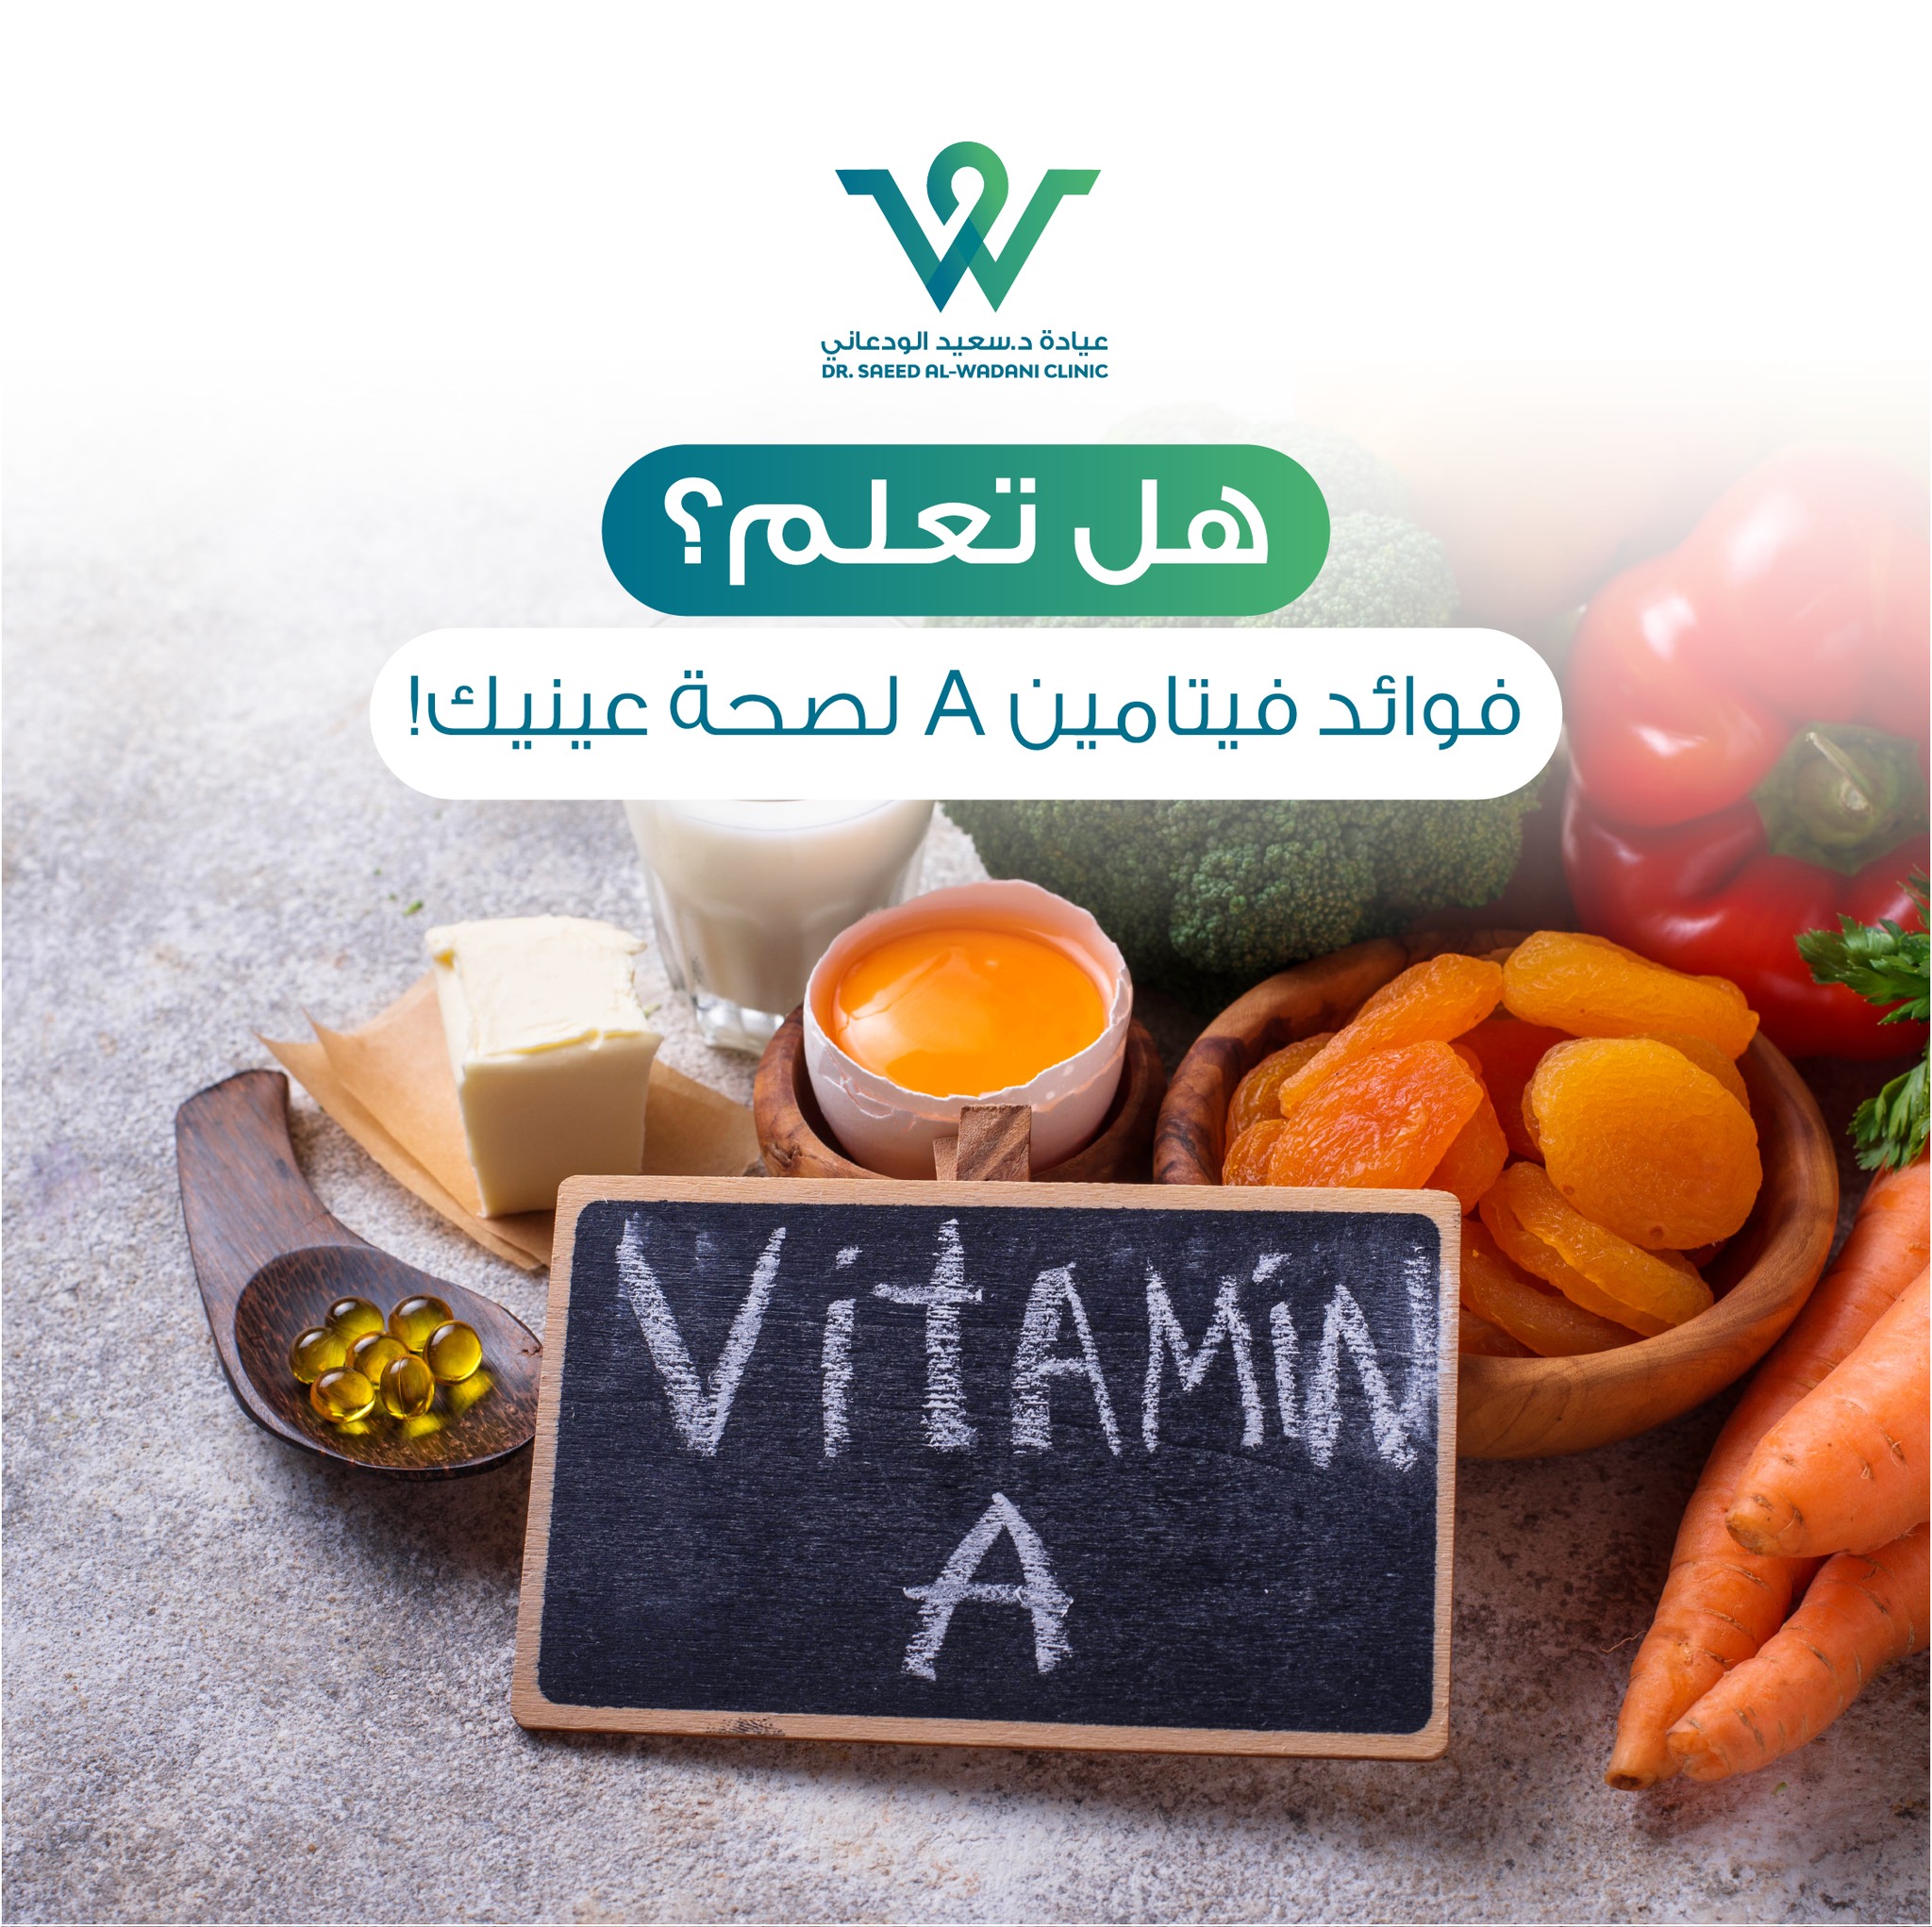 فيتامين A هو فيتامين قابل للذوبان في الدهون ويأتي من فصيلة الريتينول. وهو أحد العناصر الغذائية المهمة التي تعمل على دعم صحة جميع أنسجة الجسم.